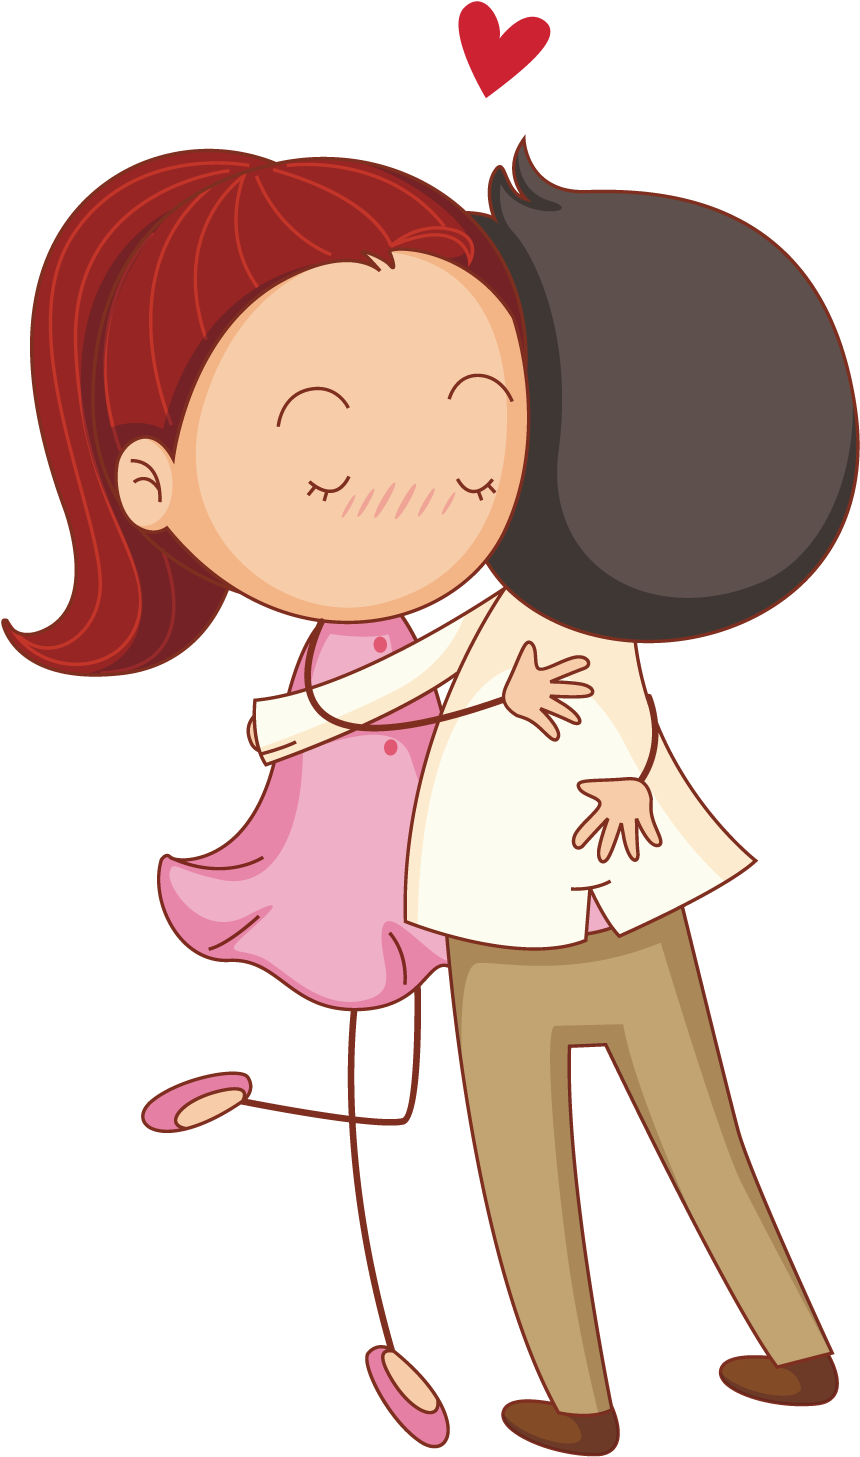 Hug Cartoon Drawing Illustration - Cartoon Boy And Girl Hugging (1500x1500)